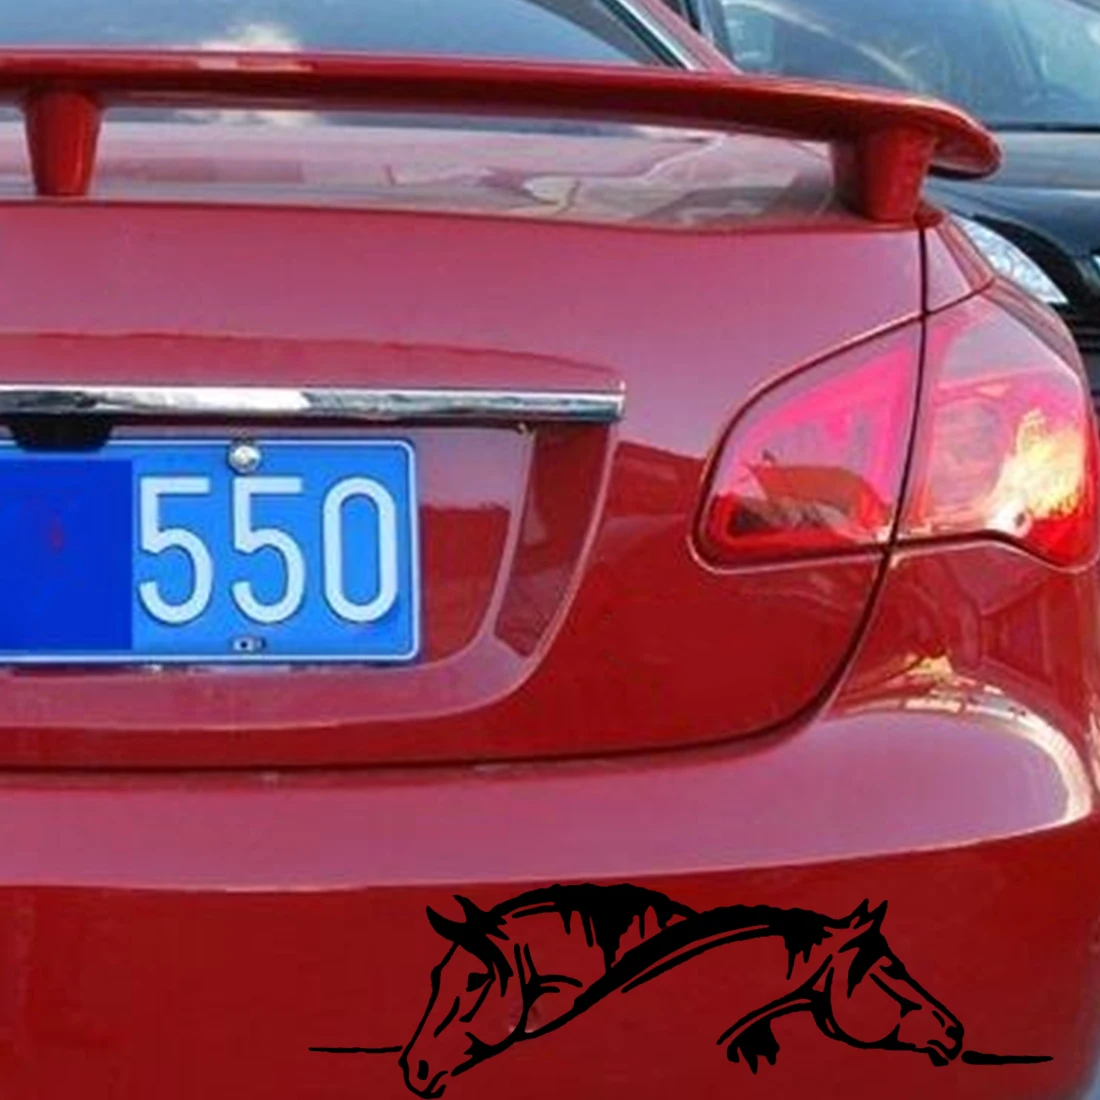 Dewtreetali креативная графическая Автомобильная наклейка и наклейка с изображением двух лошадей, смешное животное, автомобильный Стайлинг, черный/белый цвет, супер предложение, высокое качество